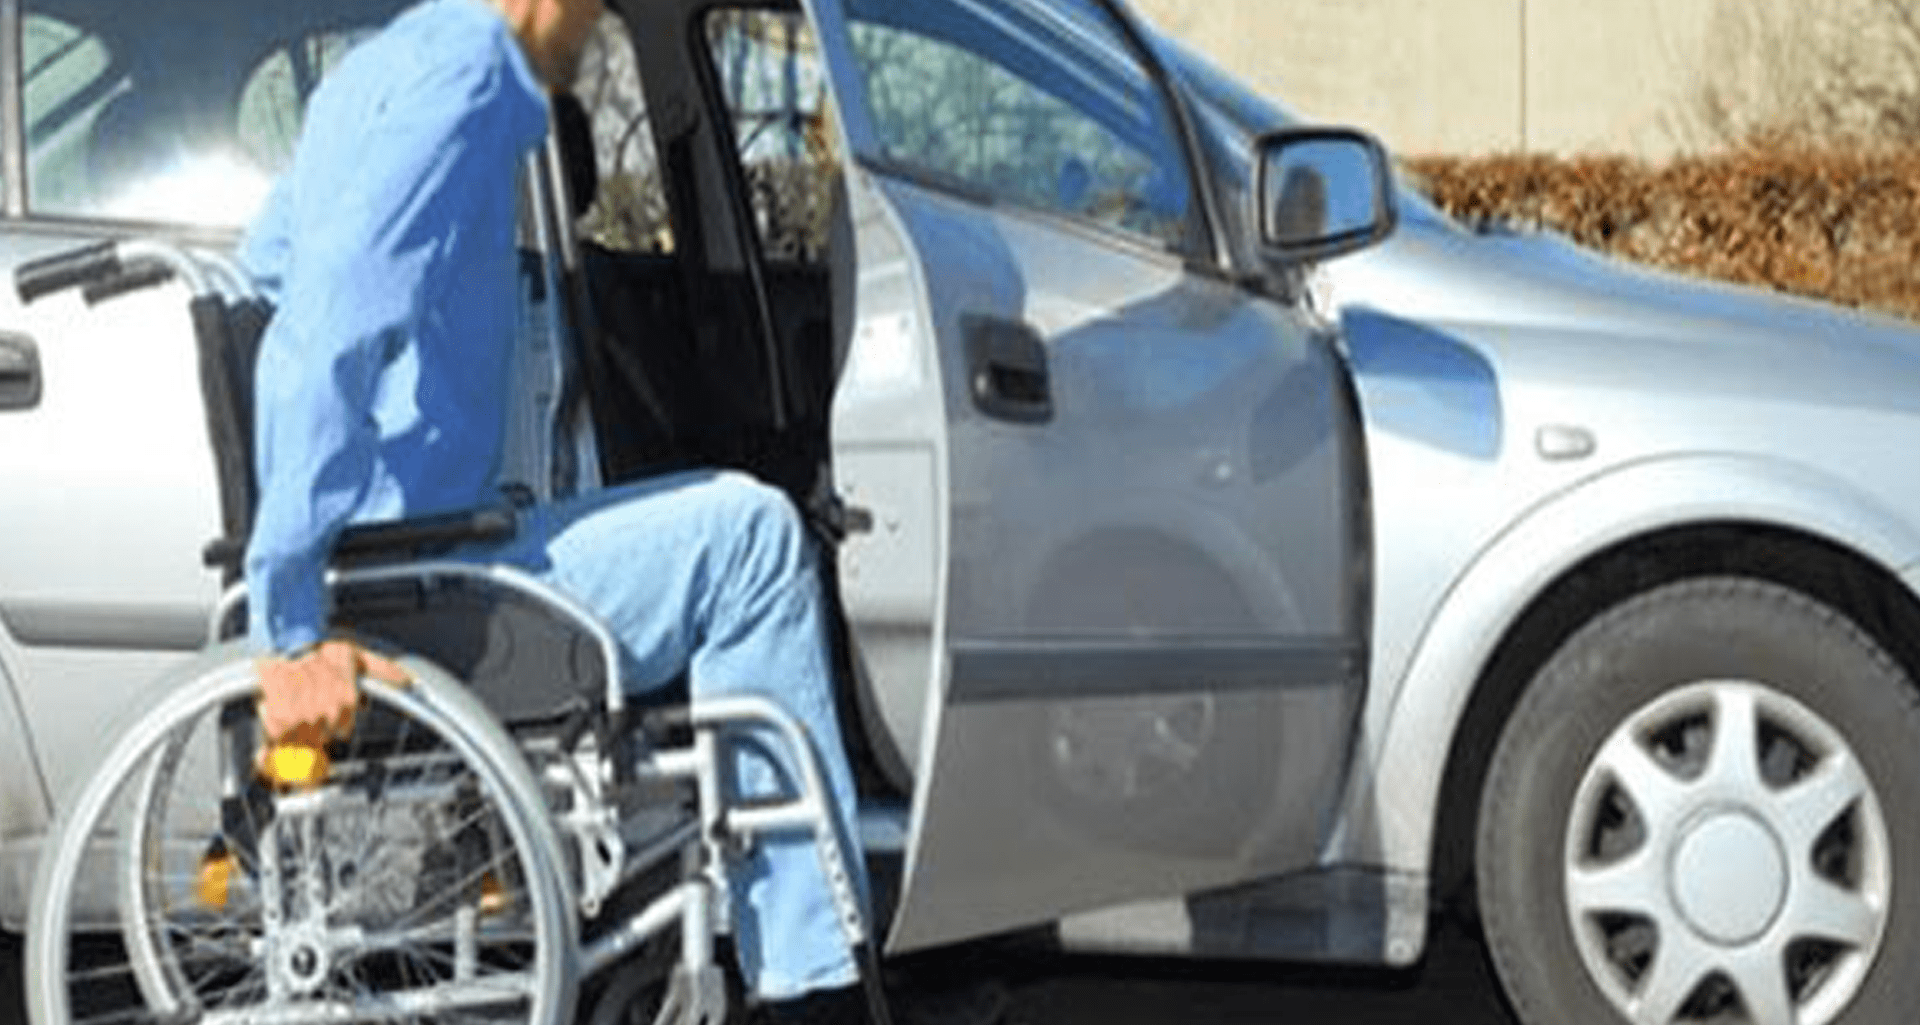 Engelliler adına alınan aracı kimler kullanır